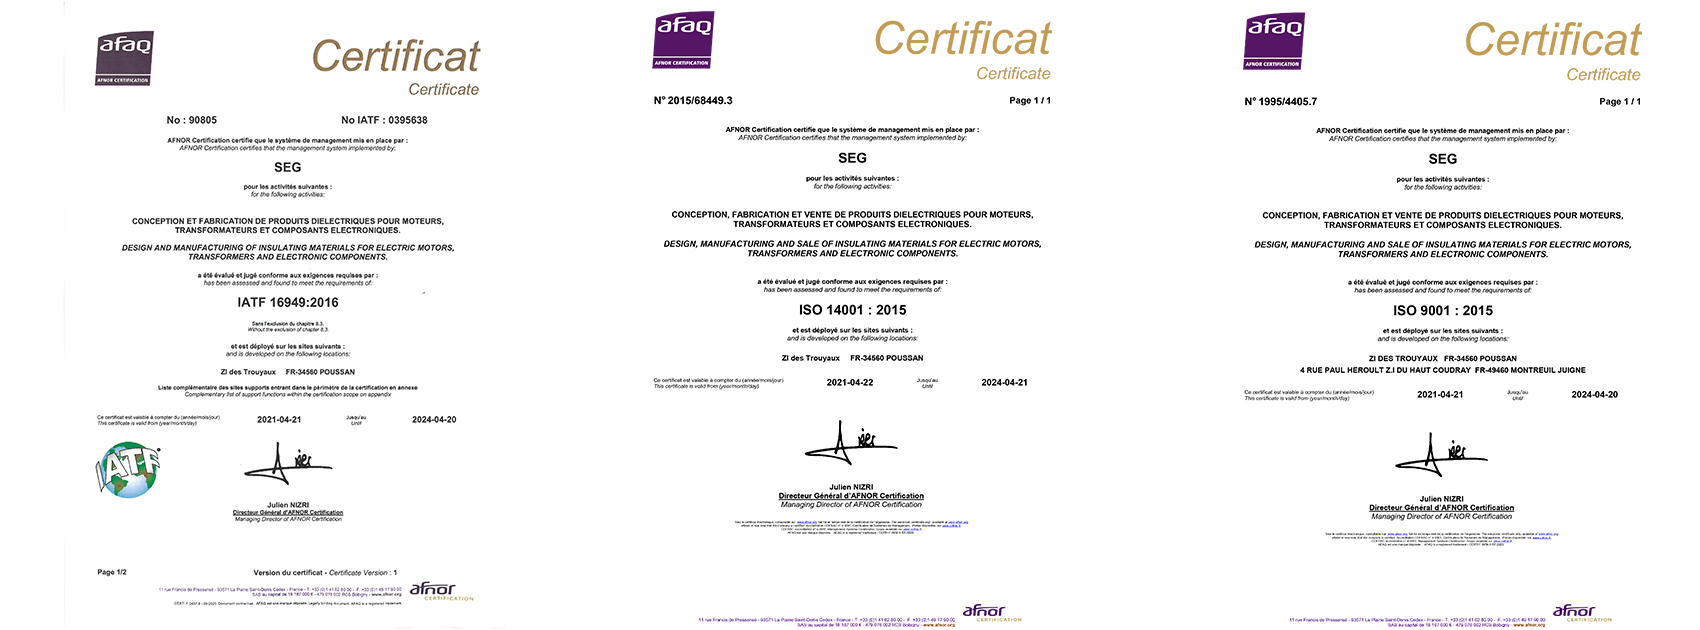 SEG Diélectriques - Afnor certification